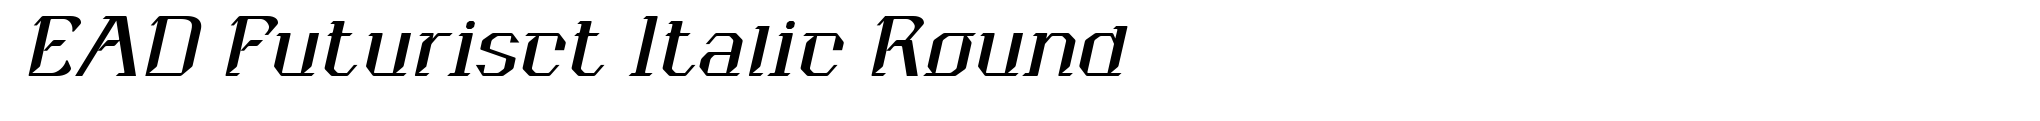 EAD Futurisct Italic Round image